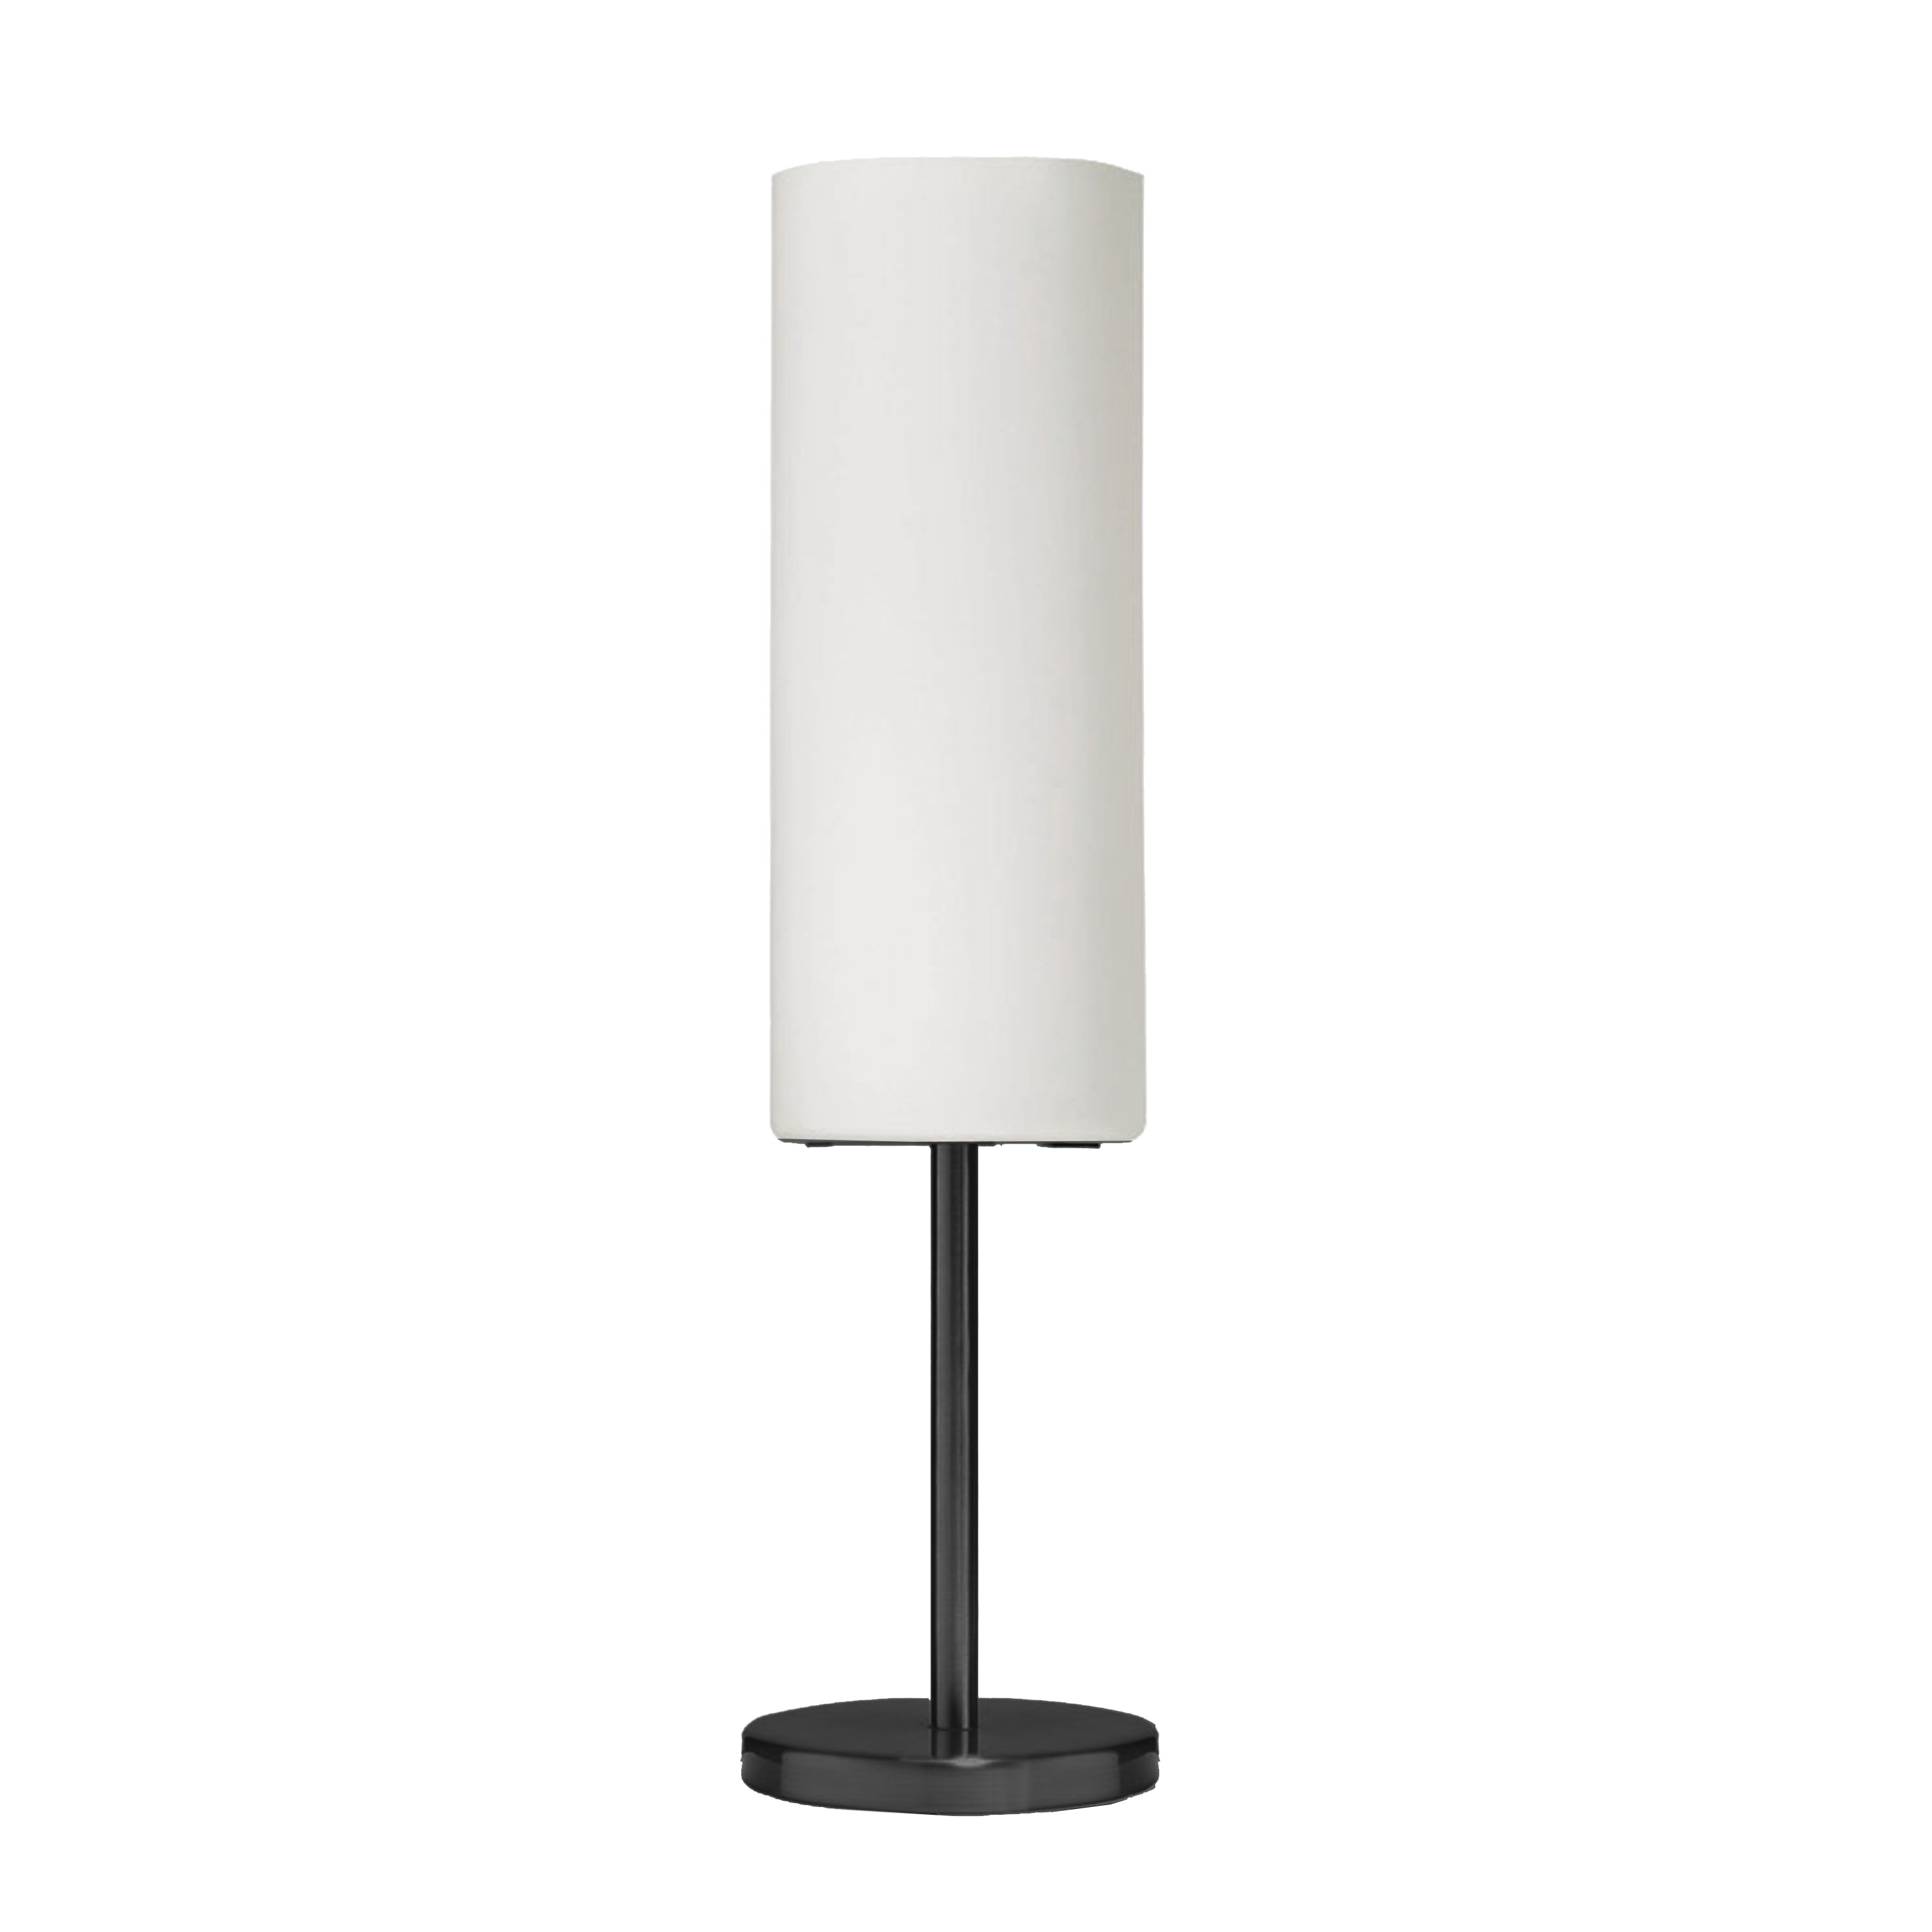 PAZA Table lamp White - 83205-MB-WH | DAINOLITE